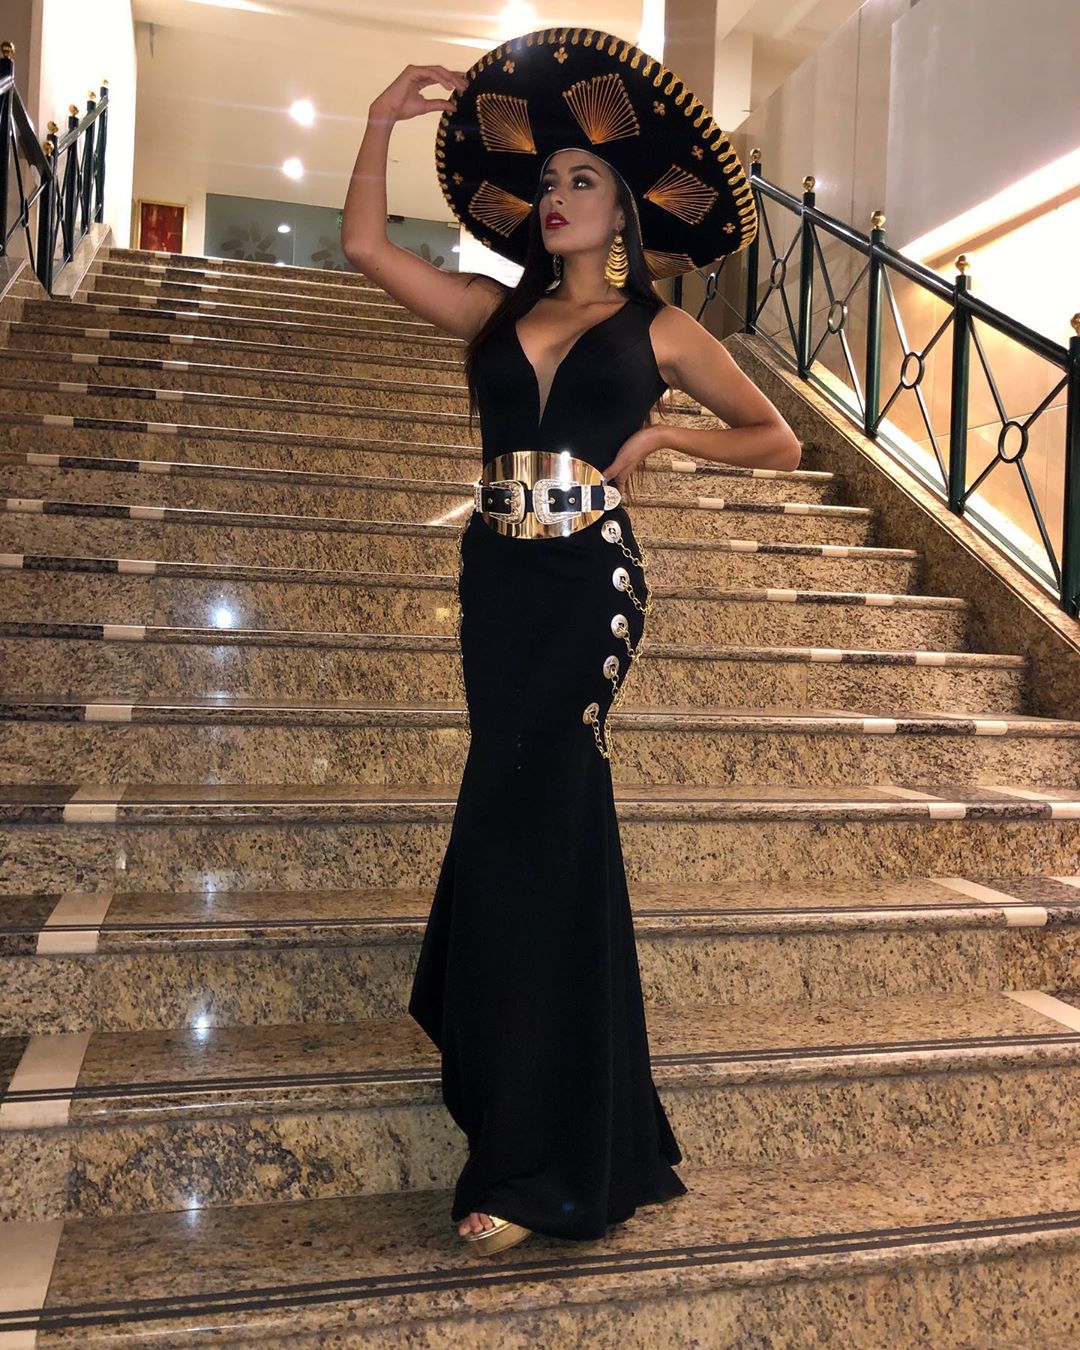 ashley alvidrez, top 12 de miss world 2019. - Página 2 70124510